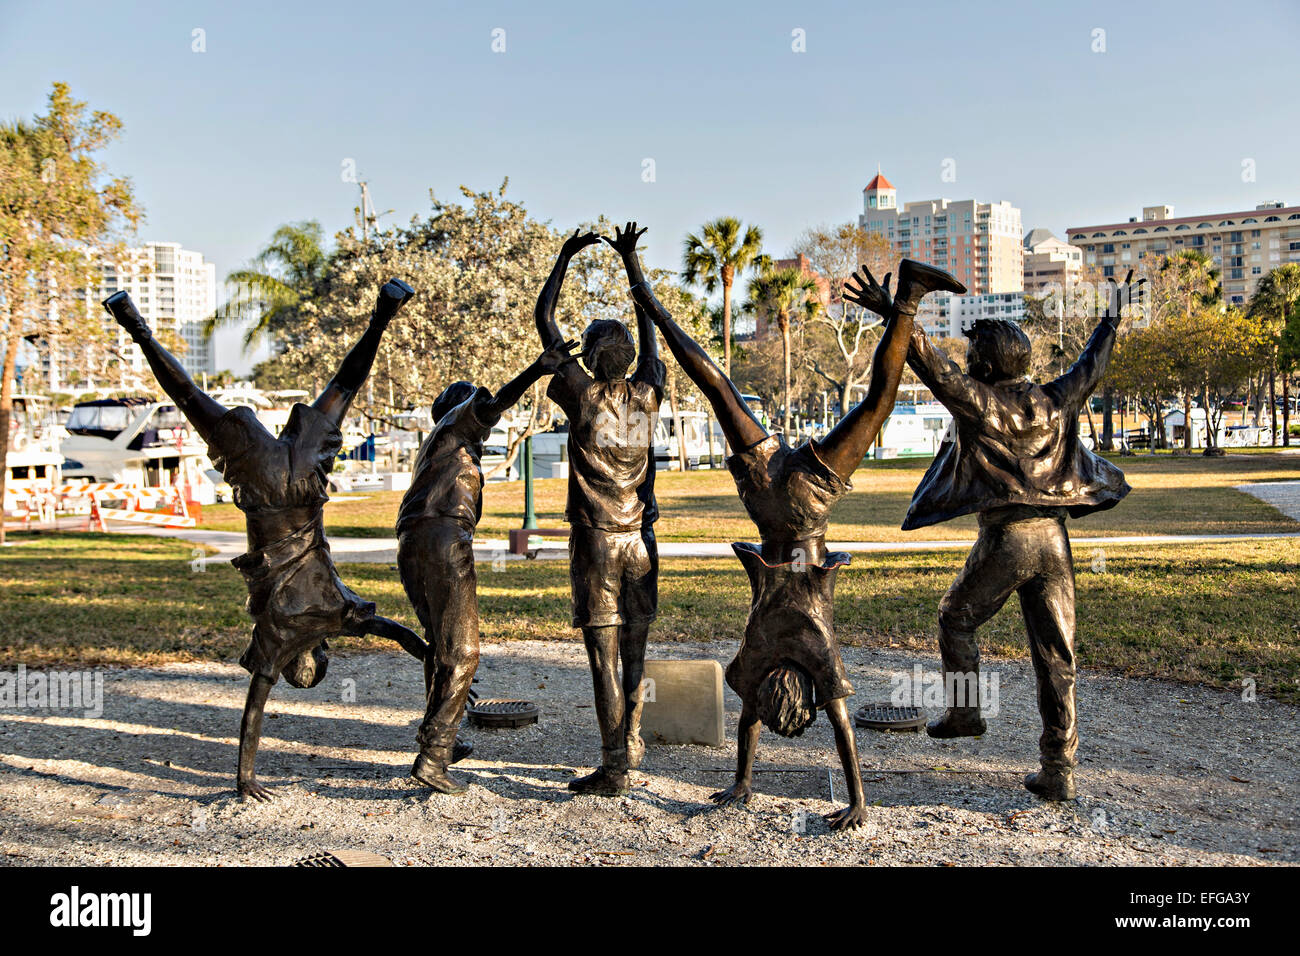 Statue von spielenden Kindern namens Olympic Wannabees Bayfront Park Sarasota, FL. Stockfoto